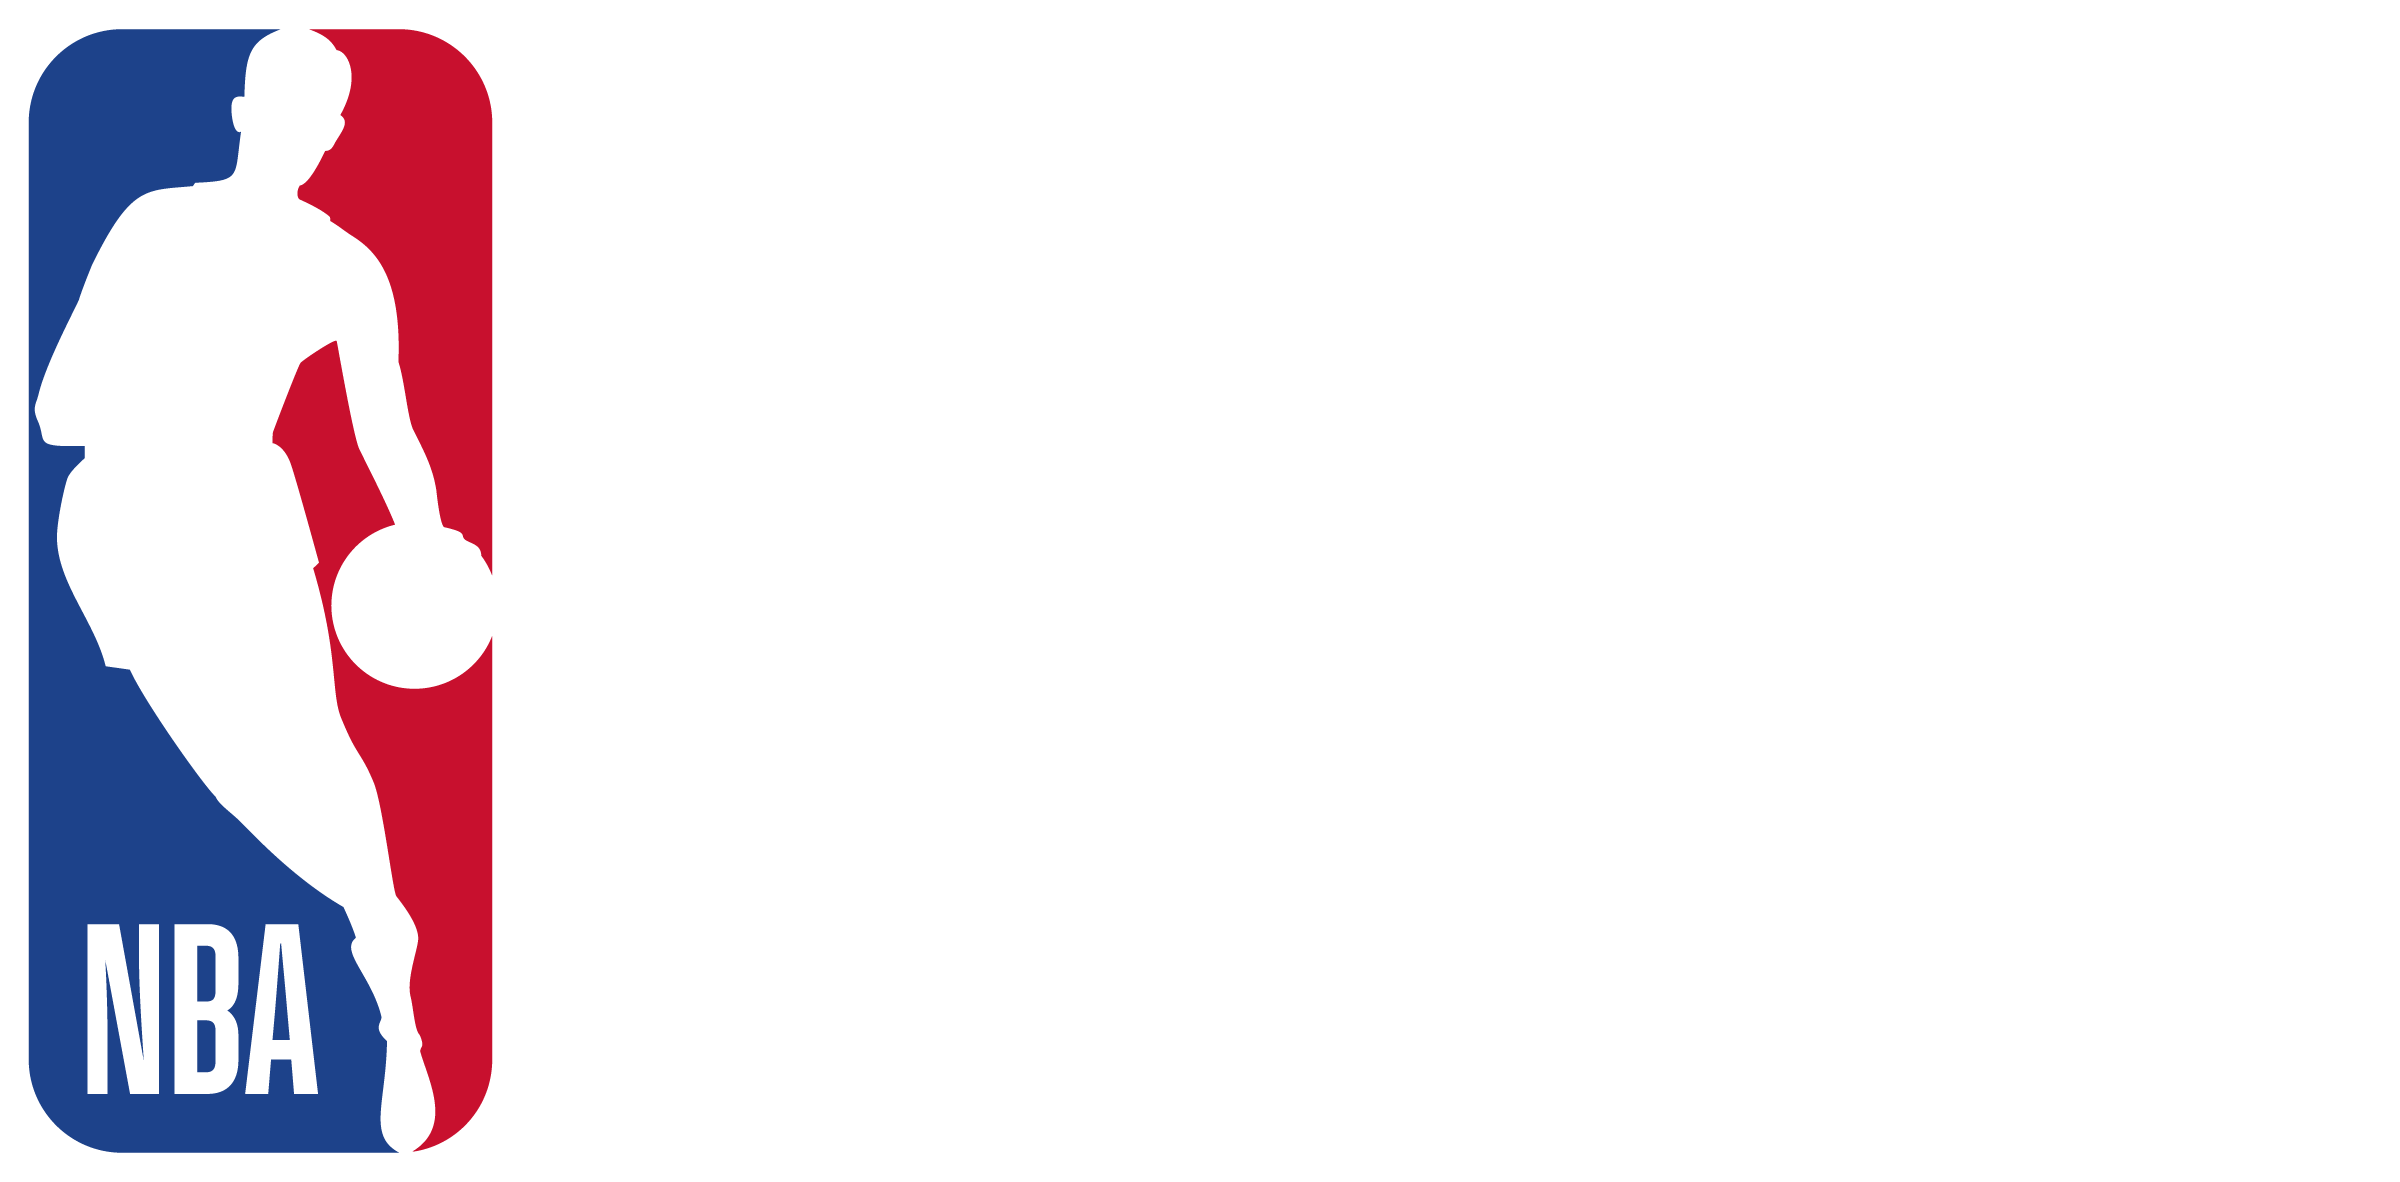 NBA Basketball School Official Logo Vertical